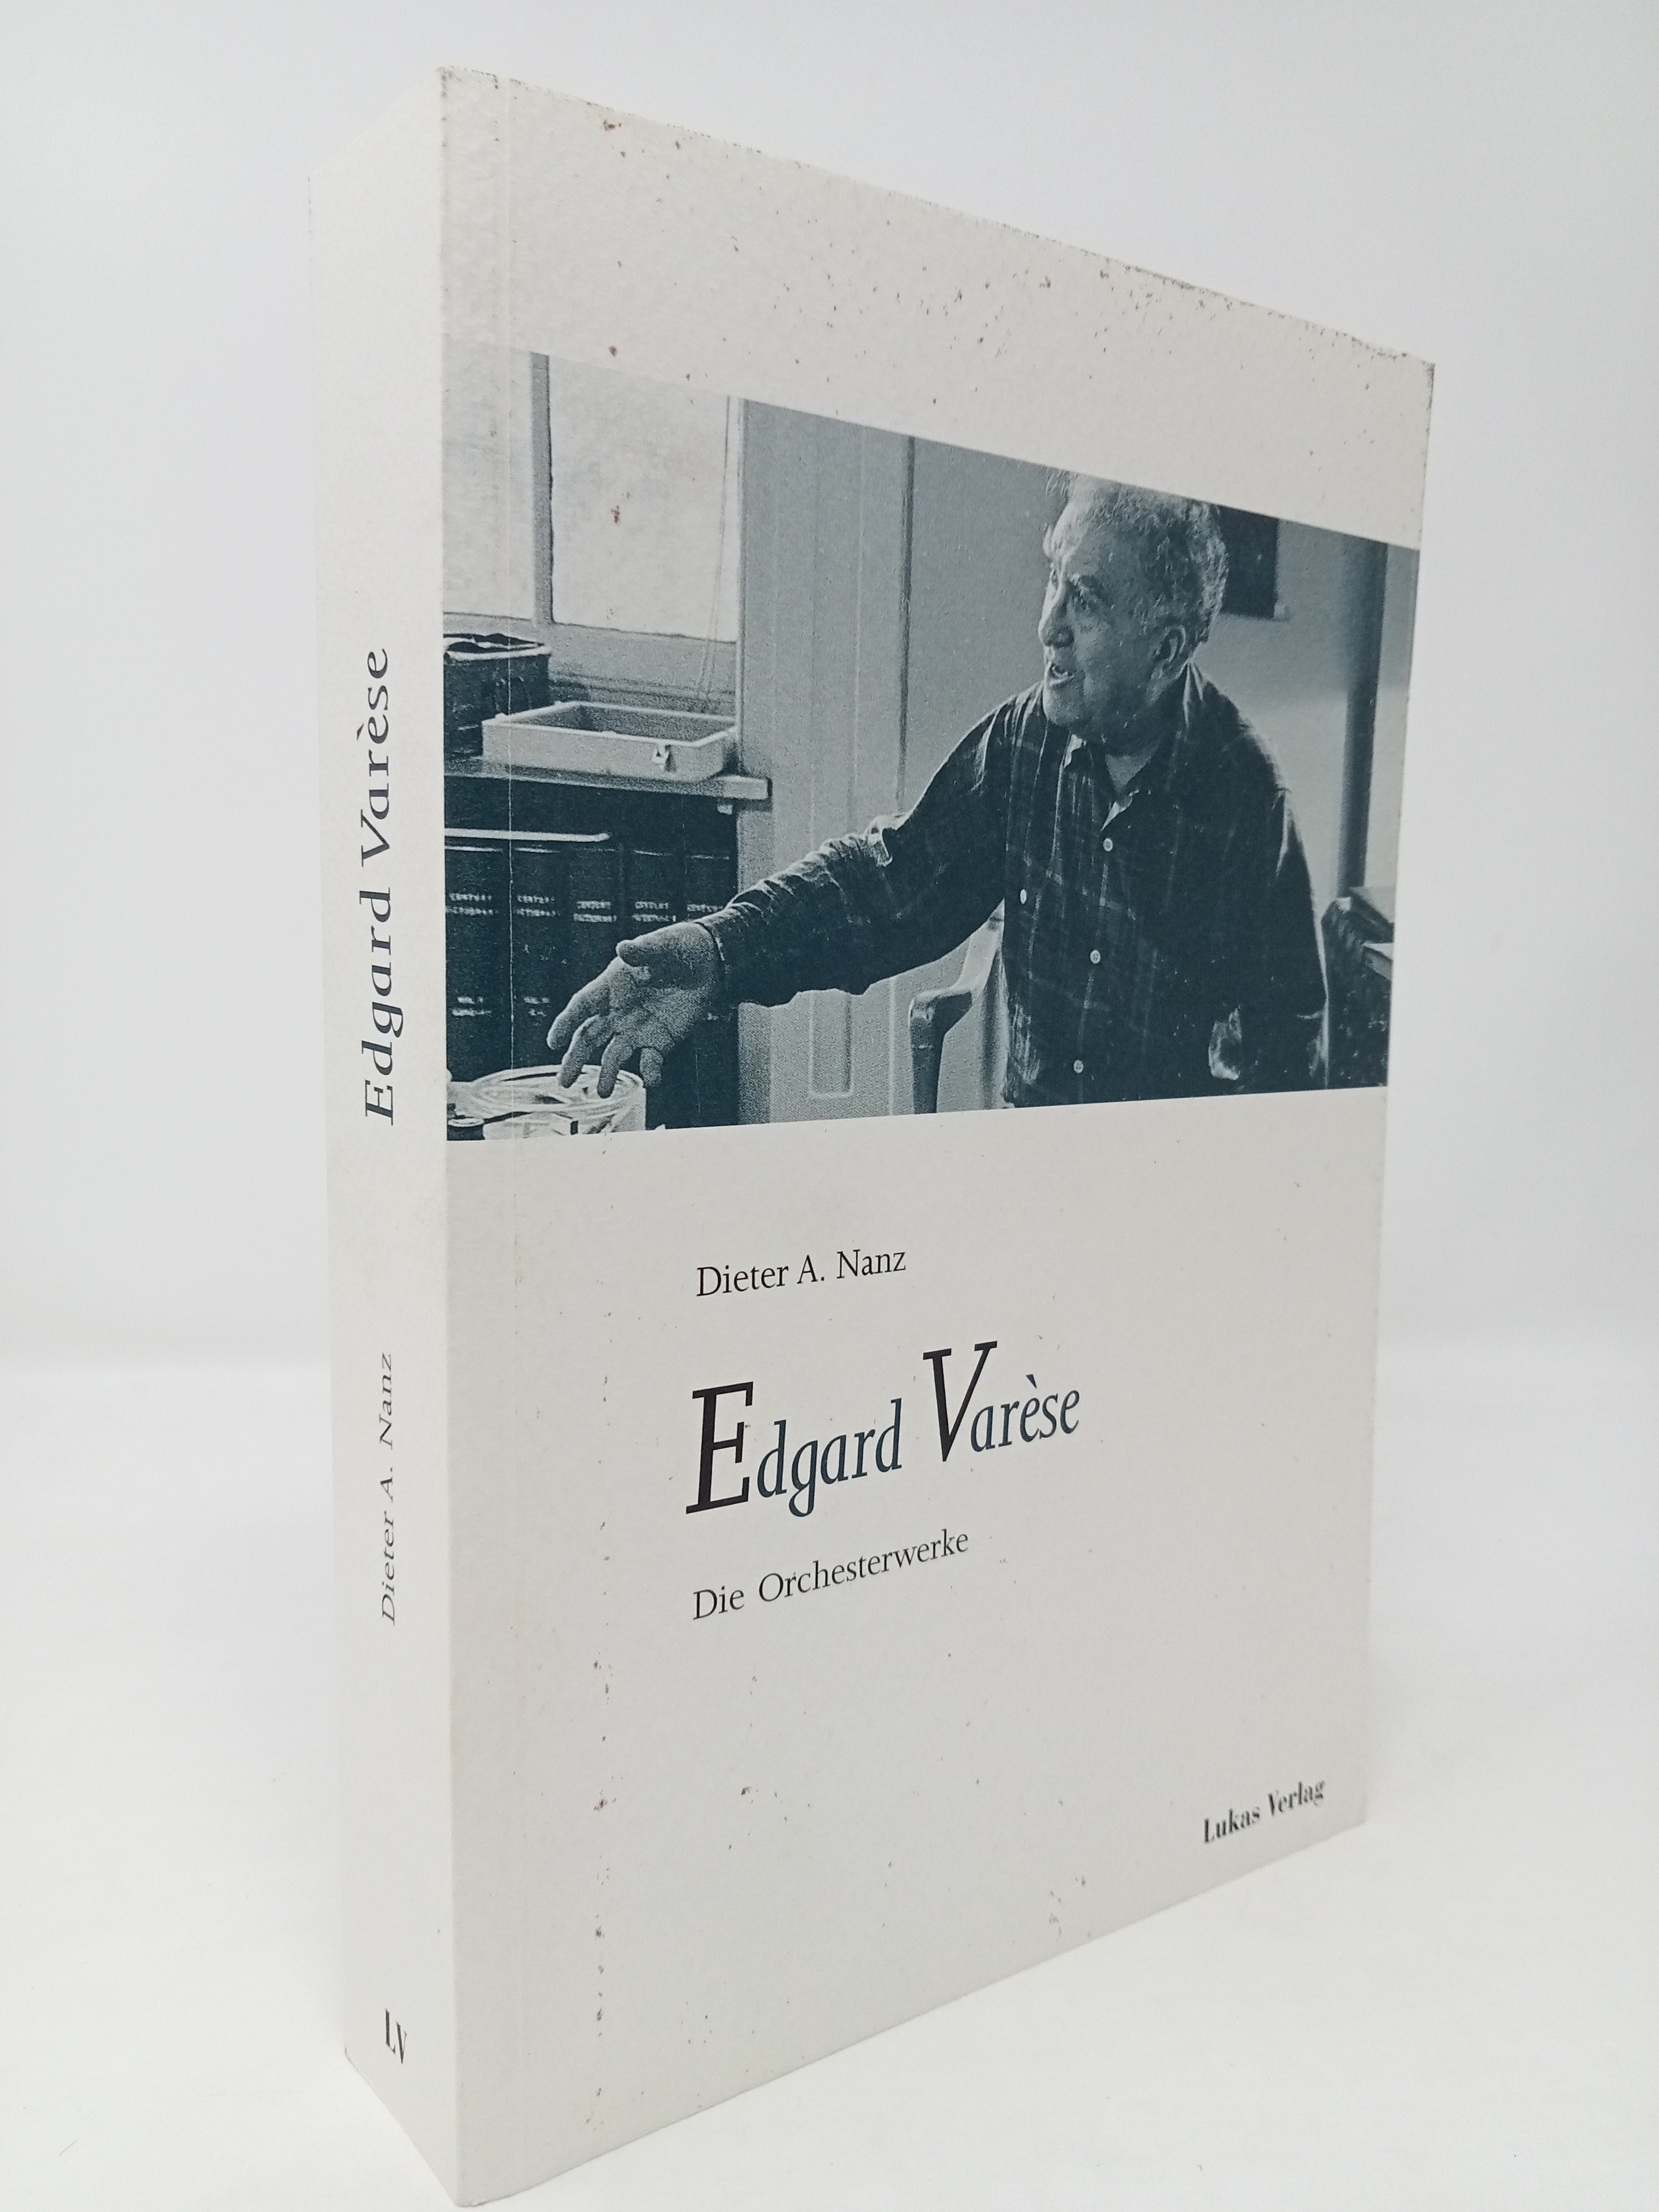 Die Orchesterwerke von Edgar Varese: Tradition und Erneuerung. - Dieter A. Nanz.